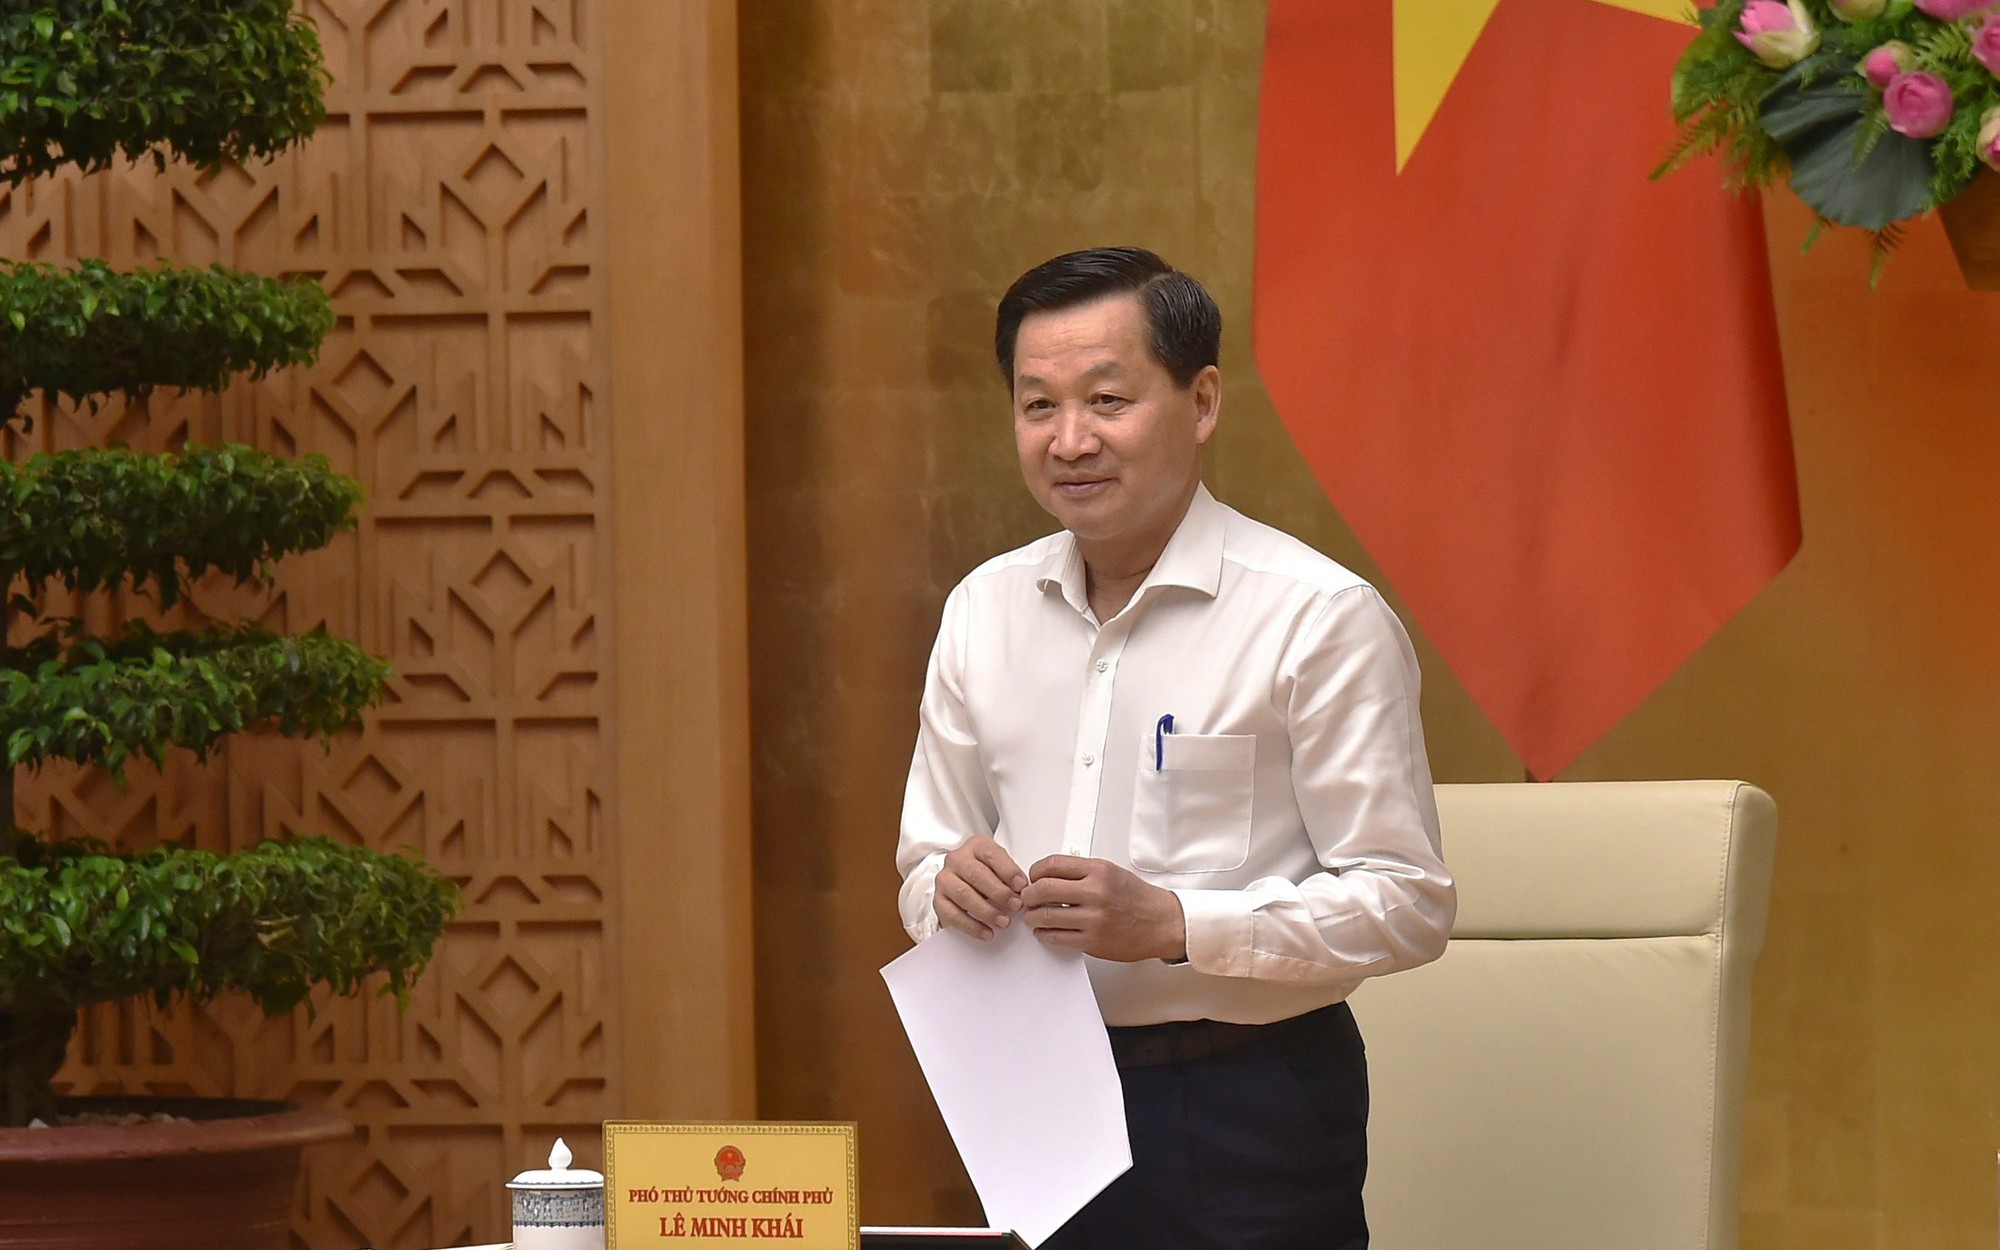 Phó Thủ tướng Lê Minh Khái: Chuẩn bị sẵn sàng các phương án, lộ trình điều chỉnh giá